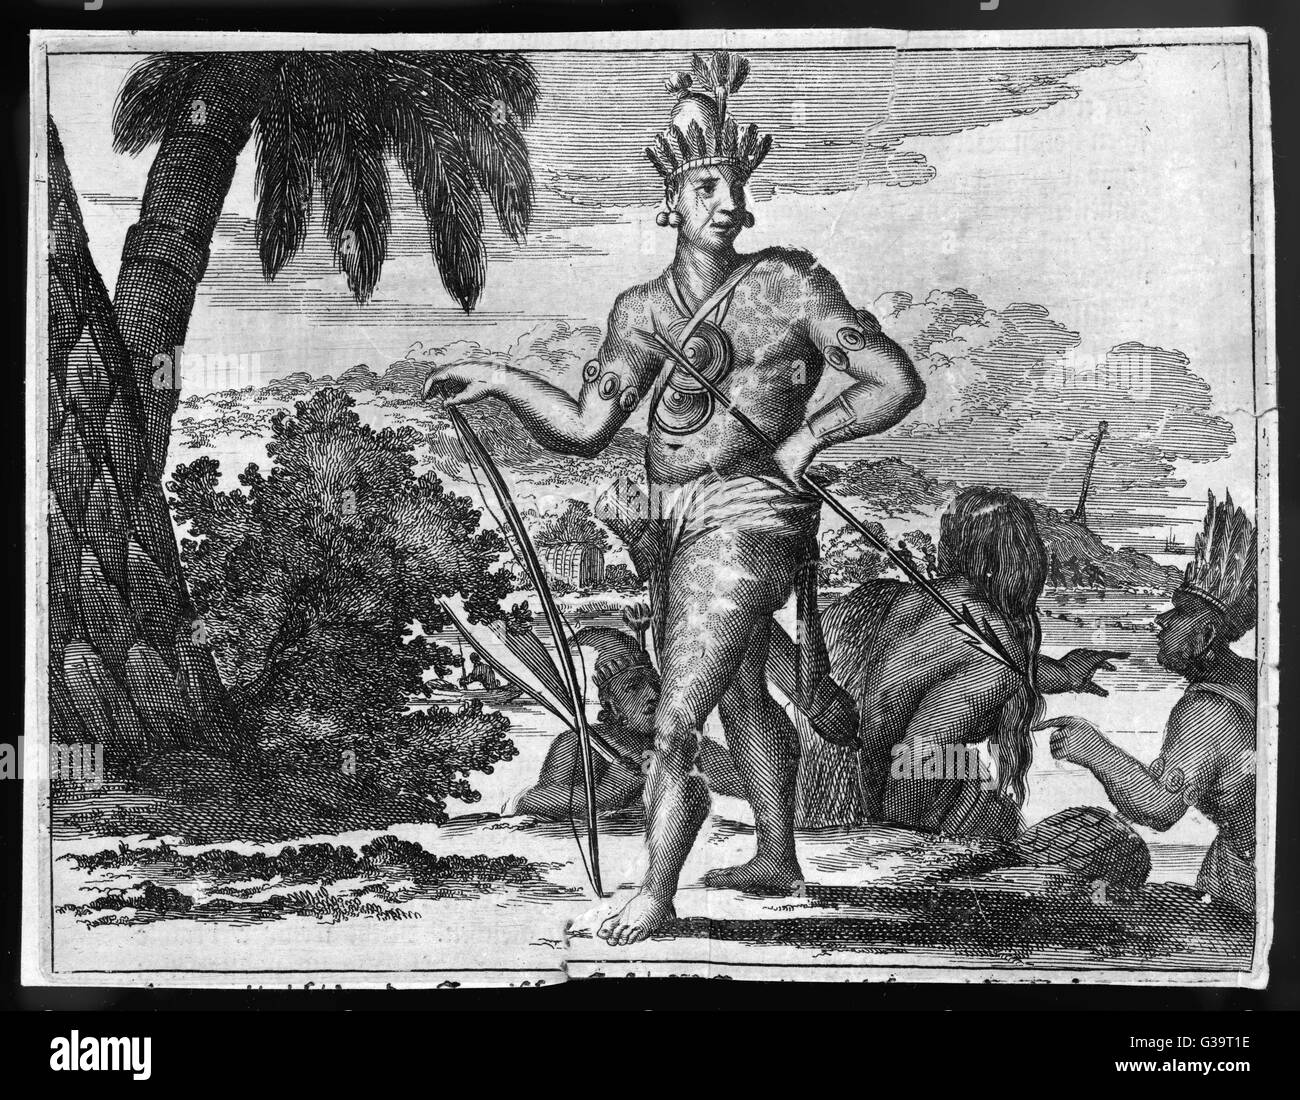 Aztec indigènes comme les conquistadors espagnols les a trouvés. Date : vers 1519 Banque D'Images